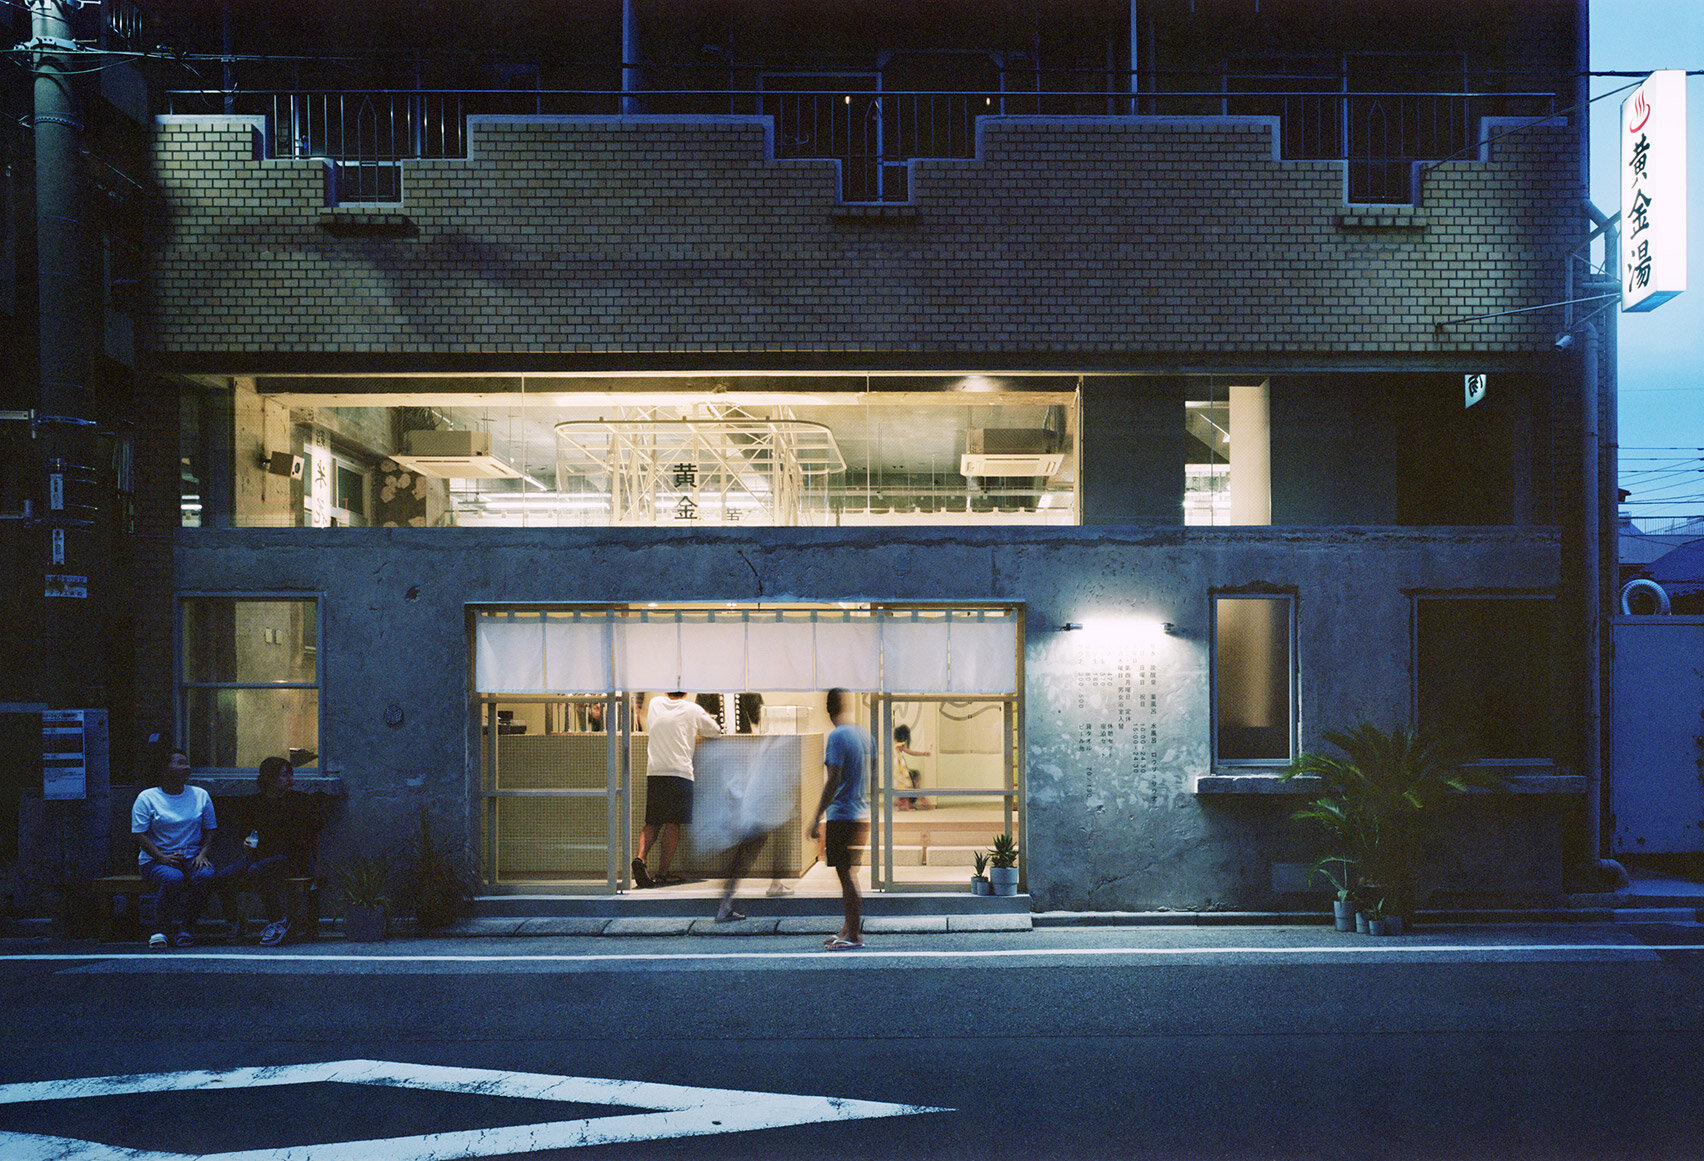 koganeyu-schemata-architect-sento-public-bath-house-renovation-japan-architecture_dezeen_1704_col_15.jpg